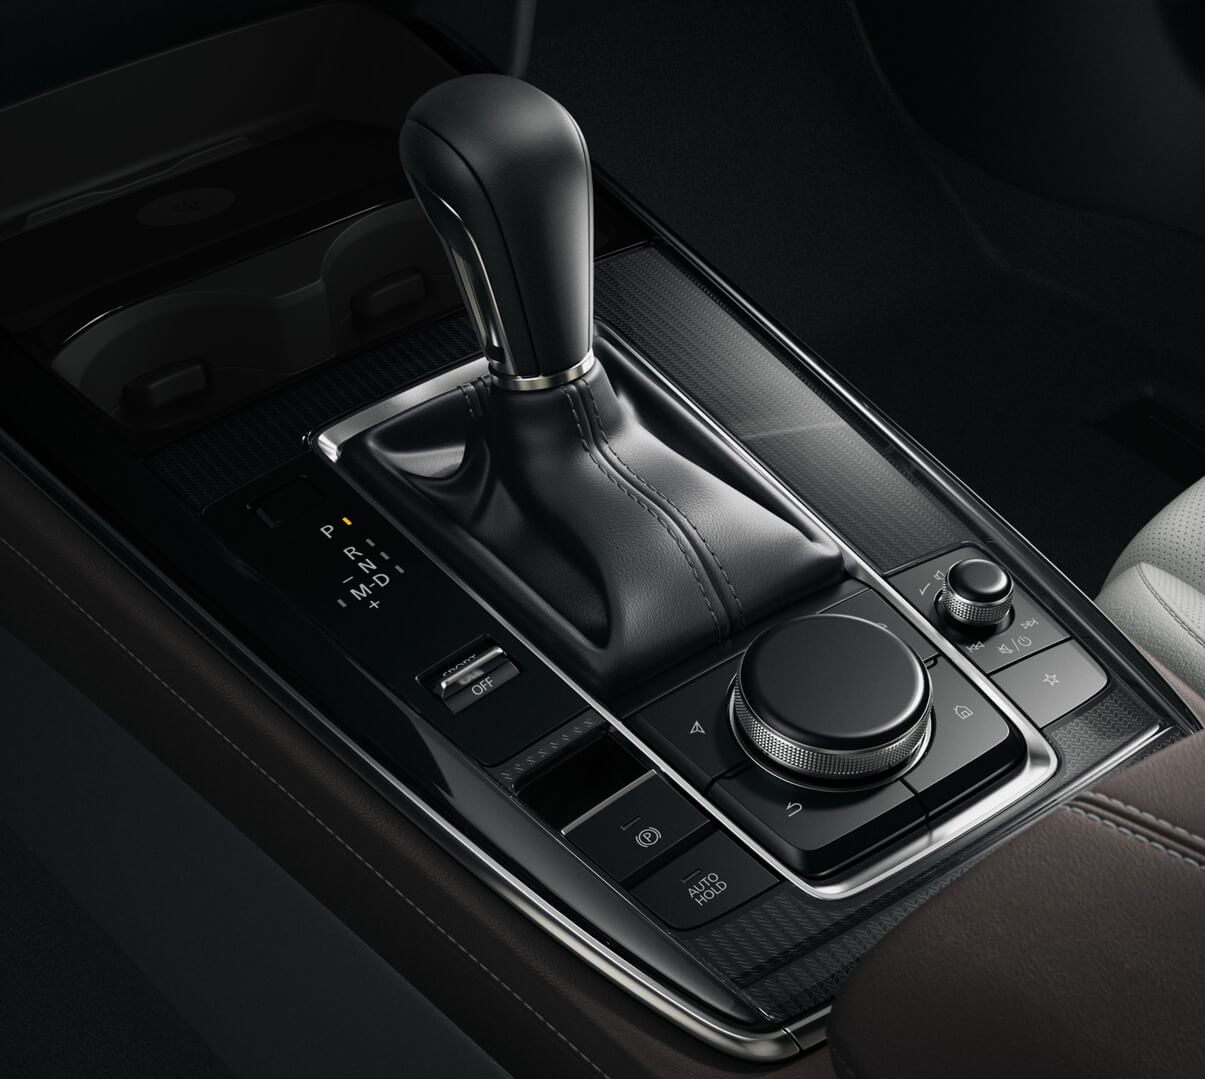 La console centrale de la Mazda CX-30 avec le levier de vitesse et le bouton du HMI Commander.